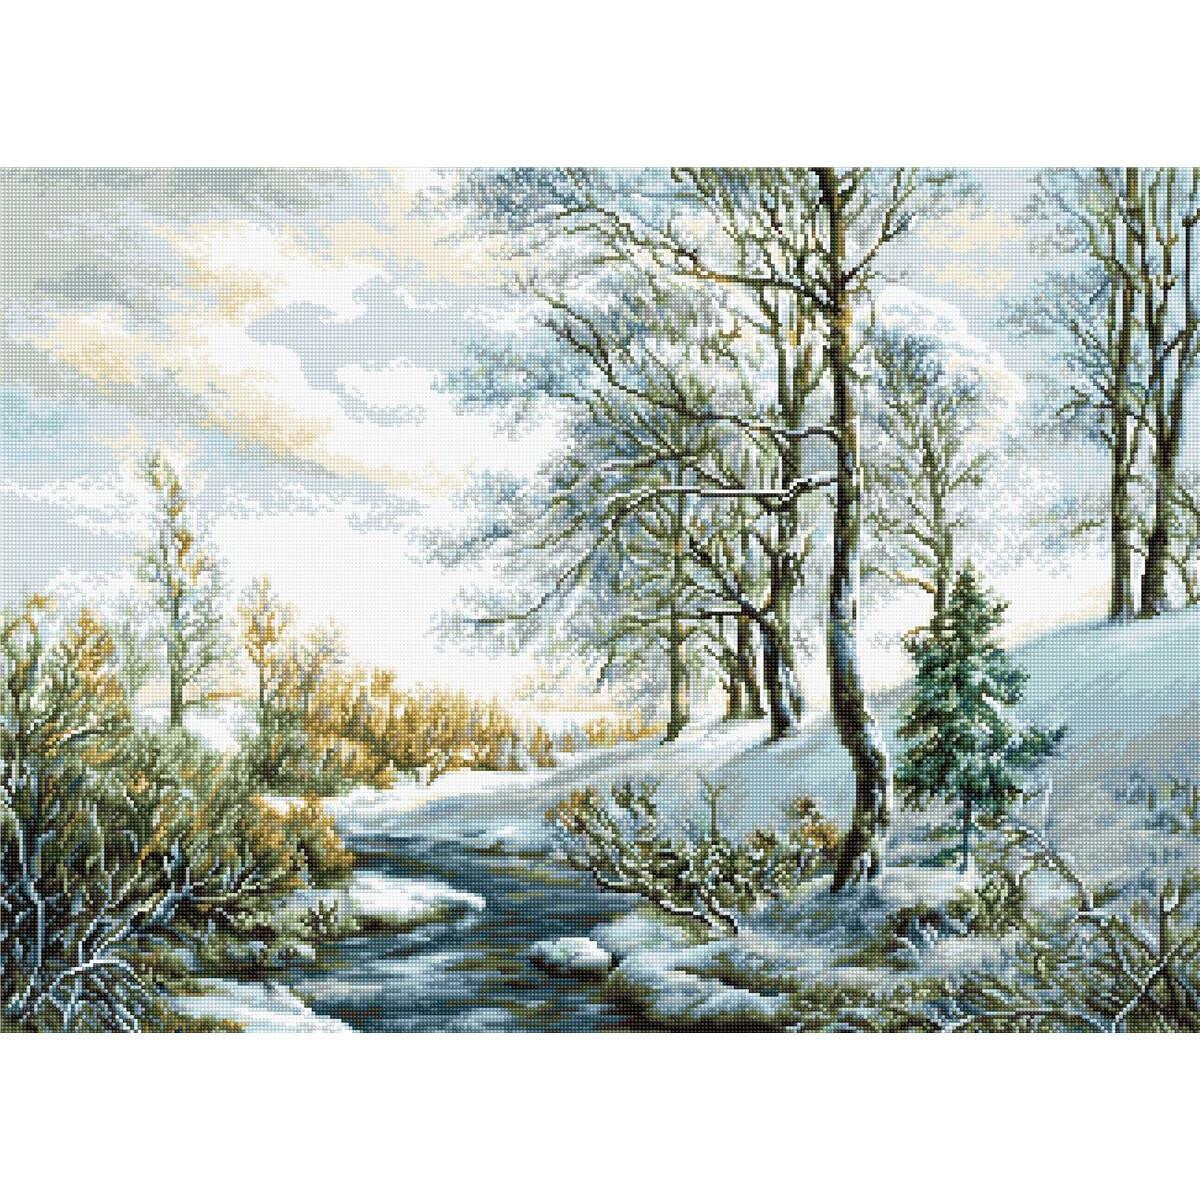 Un tranquilo paisaje invernal evoca el encanto de un...